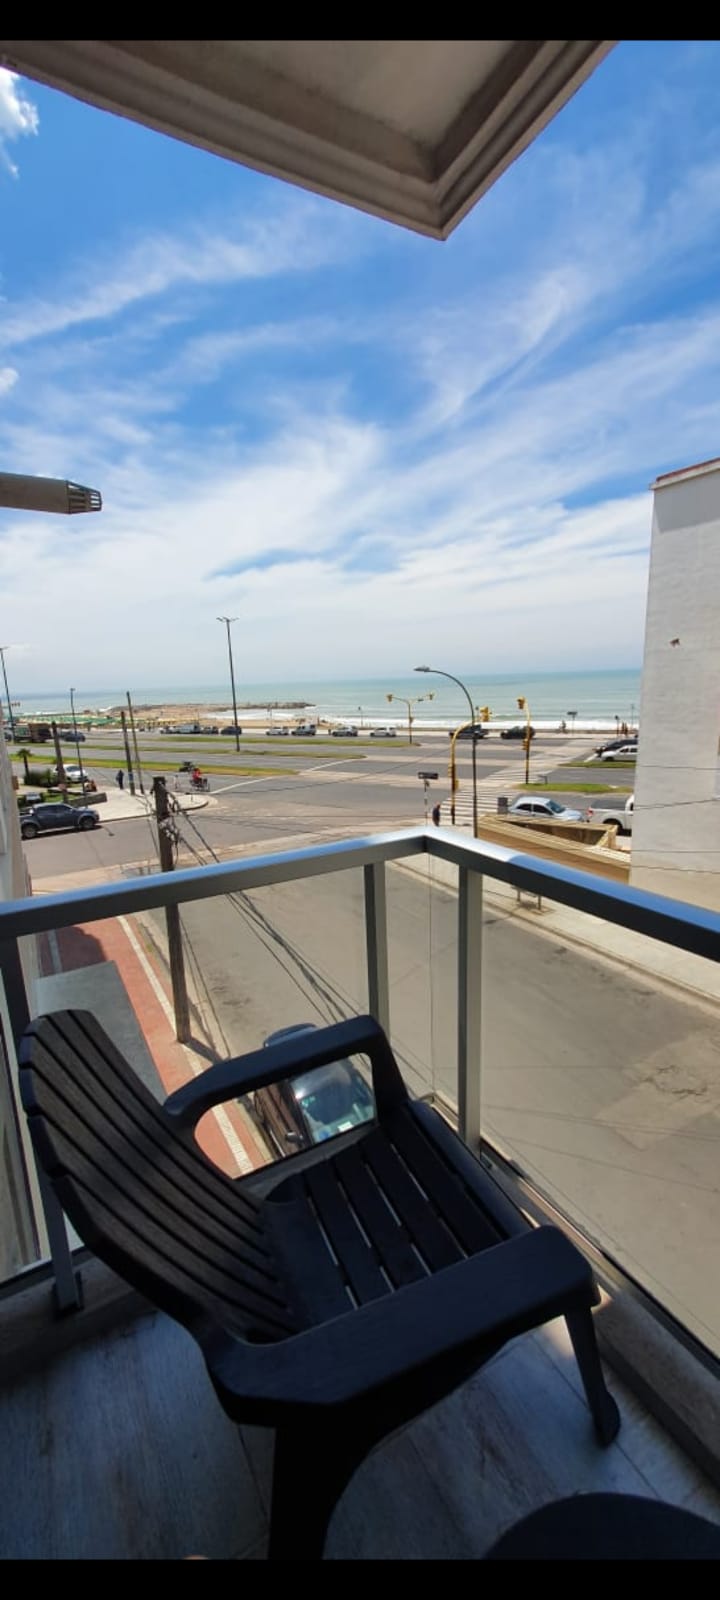 En venta Departamento dos ambientes vista plena al mar con cochera y terraza propia.  Zona Perla Norte.